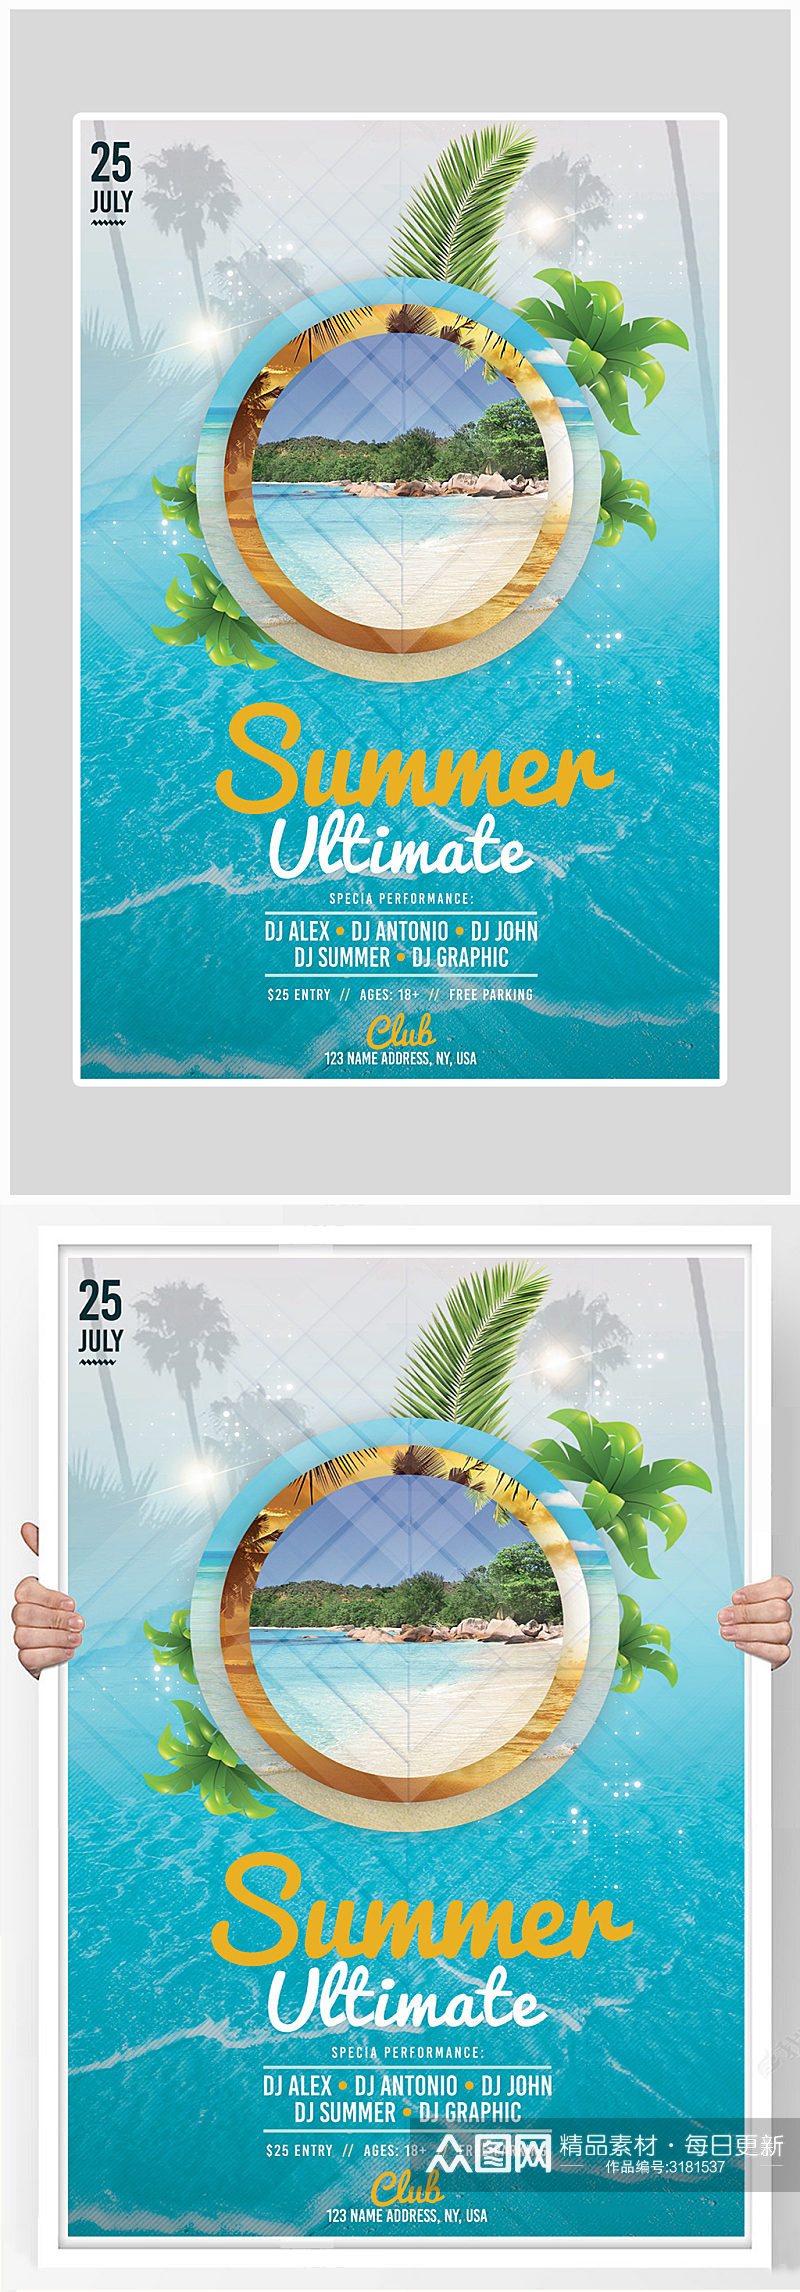 创意简约夏季沙滩狂欢海报设计素材